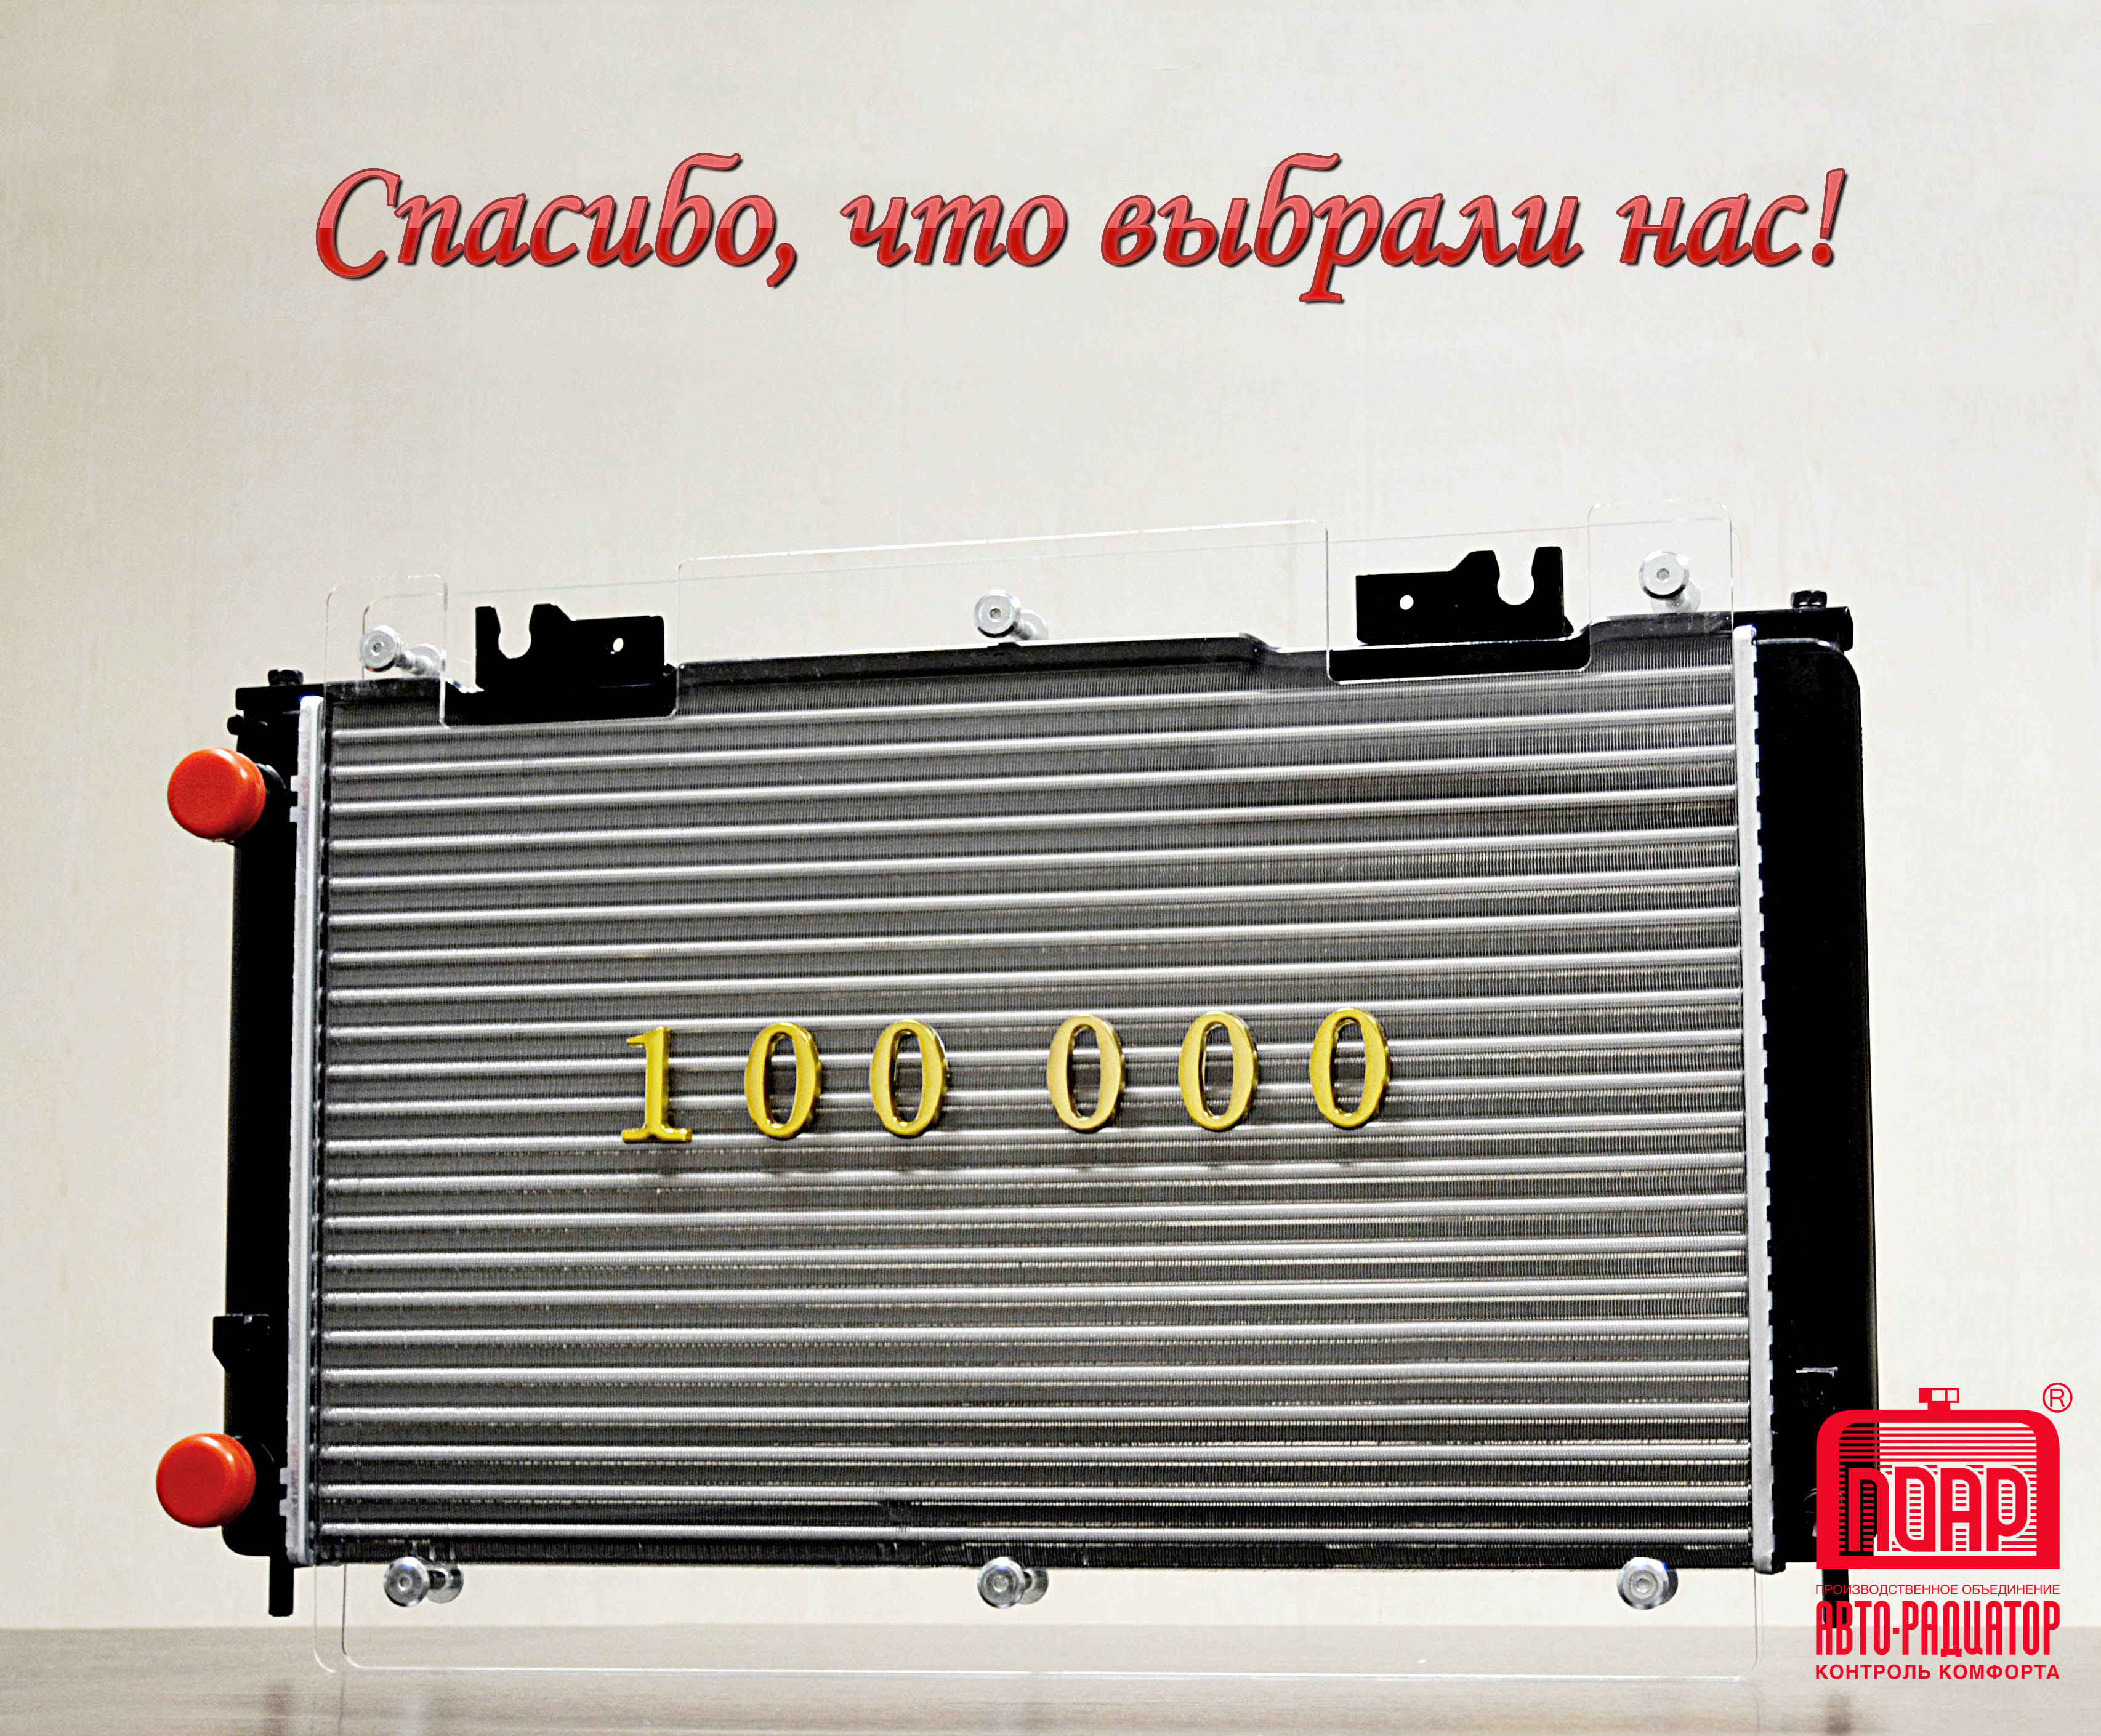 Компания «Автолига» успешно реализовала более 100 000 радиаторов ПОАР на территории ЮФО и СКФО